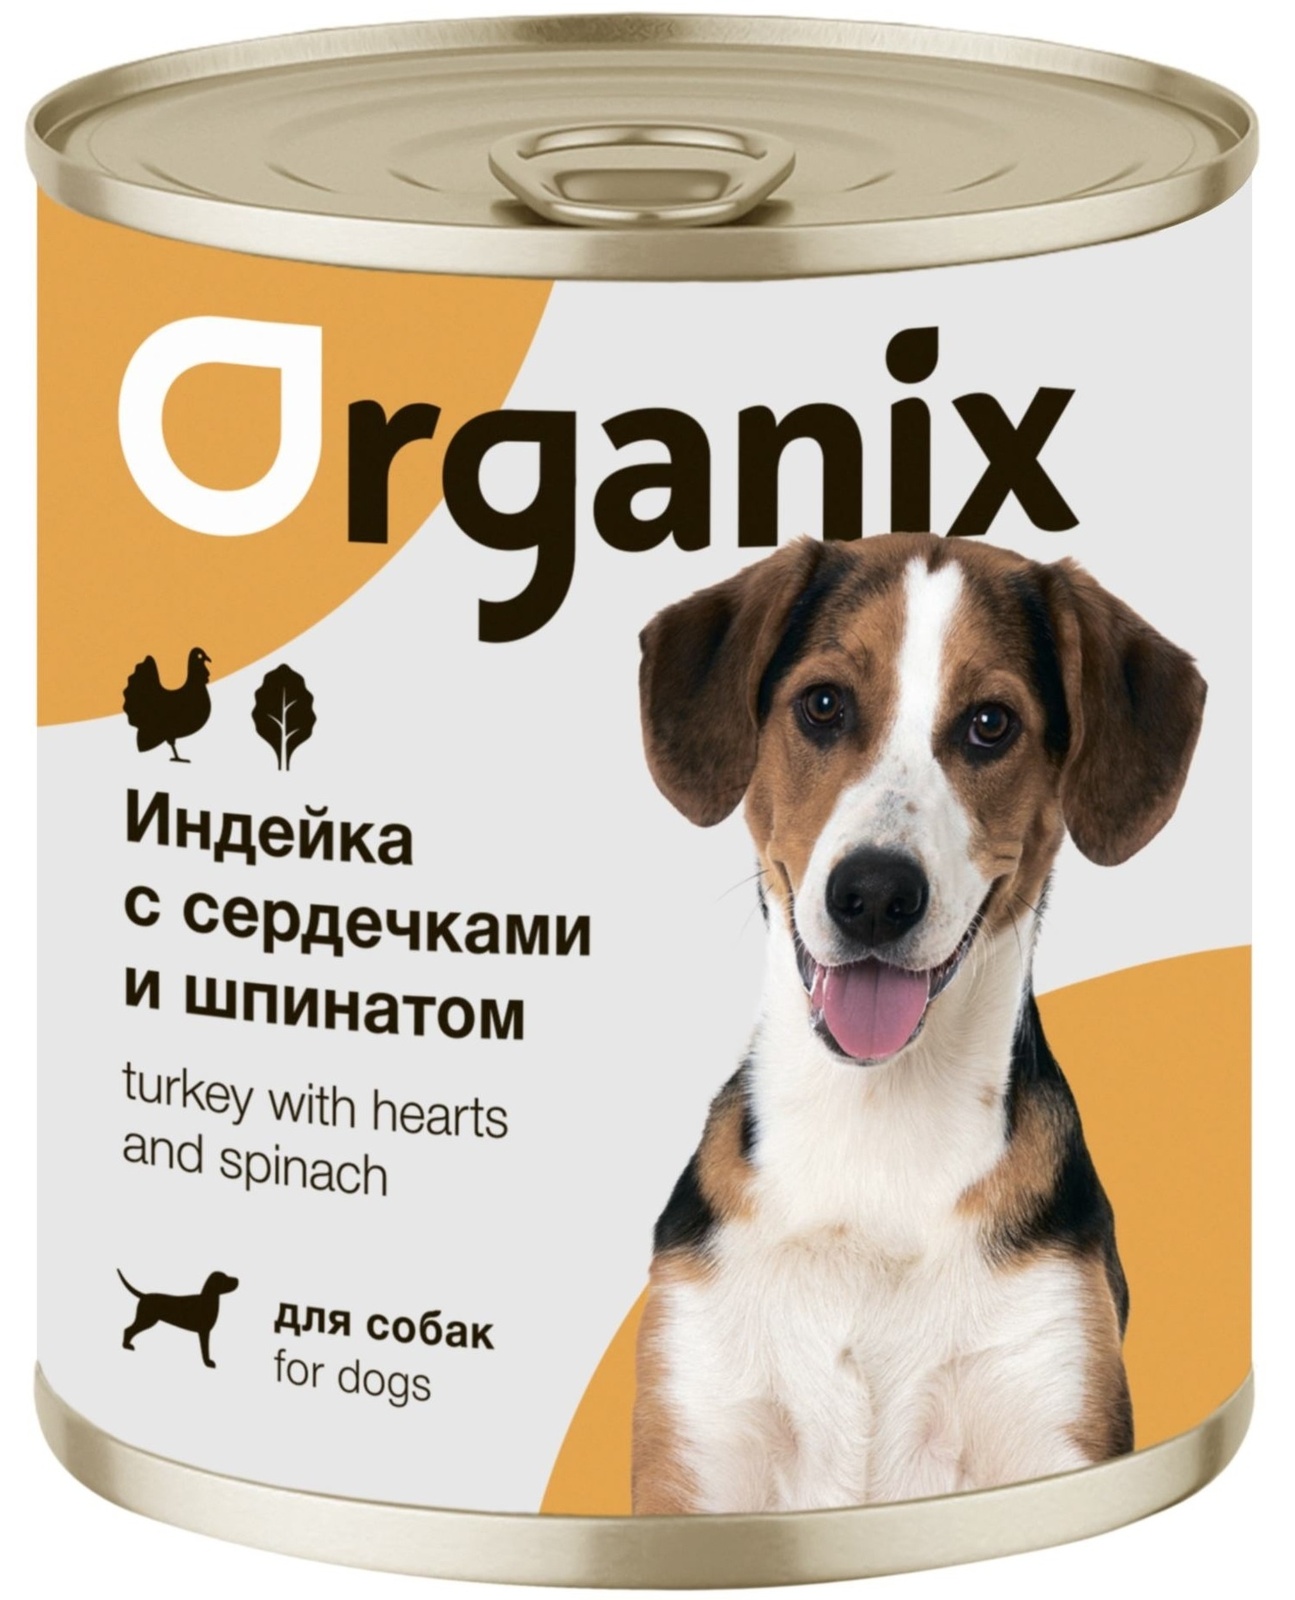 Organix консервы Organix консервы для собак Индейка с сердечками и шпинатом (750 г) organix консервы organix консервы с говядиной и потрошками для взрослых собак 750 г